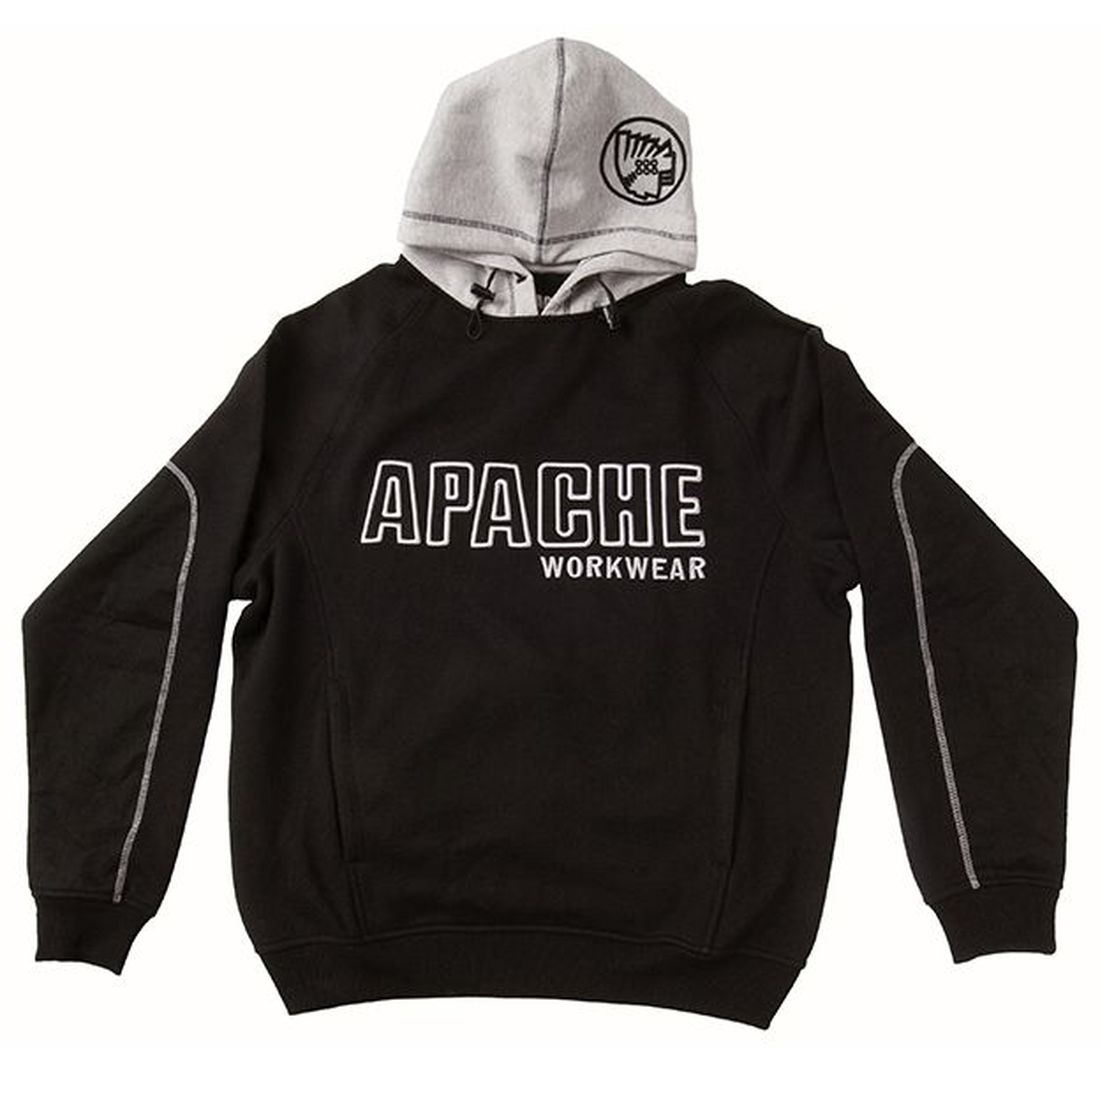 Apache Hooded Sweatshirt Black/Grey - M (42in)                                         